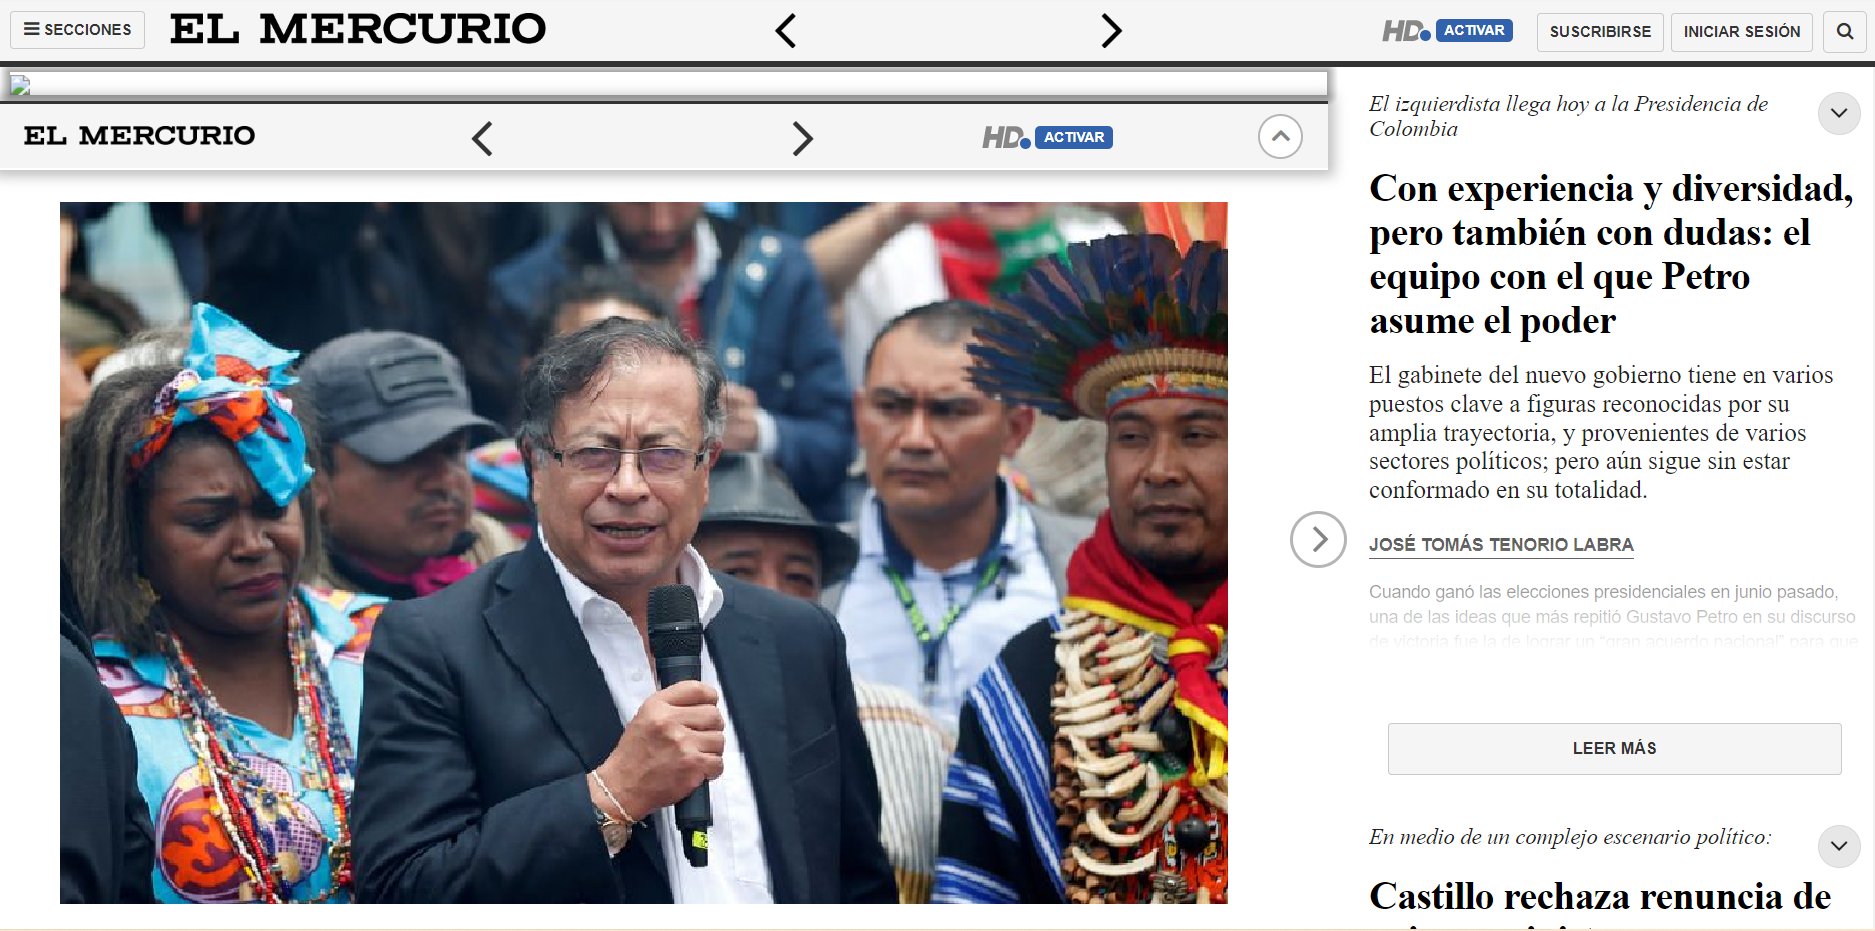 El Mercurio de Chile publicó a través de su portal web, la posesión del presidente de la republica de Colombia como un futuro de diversidad pero también con dudas.
Foto: Vía elmercurio.com